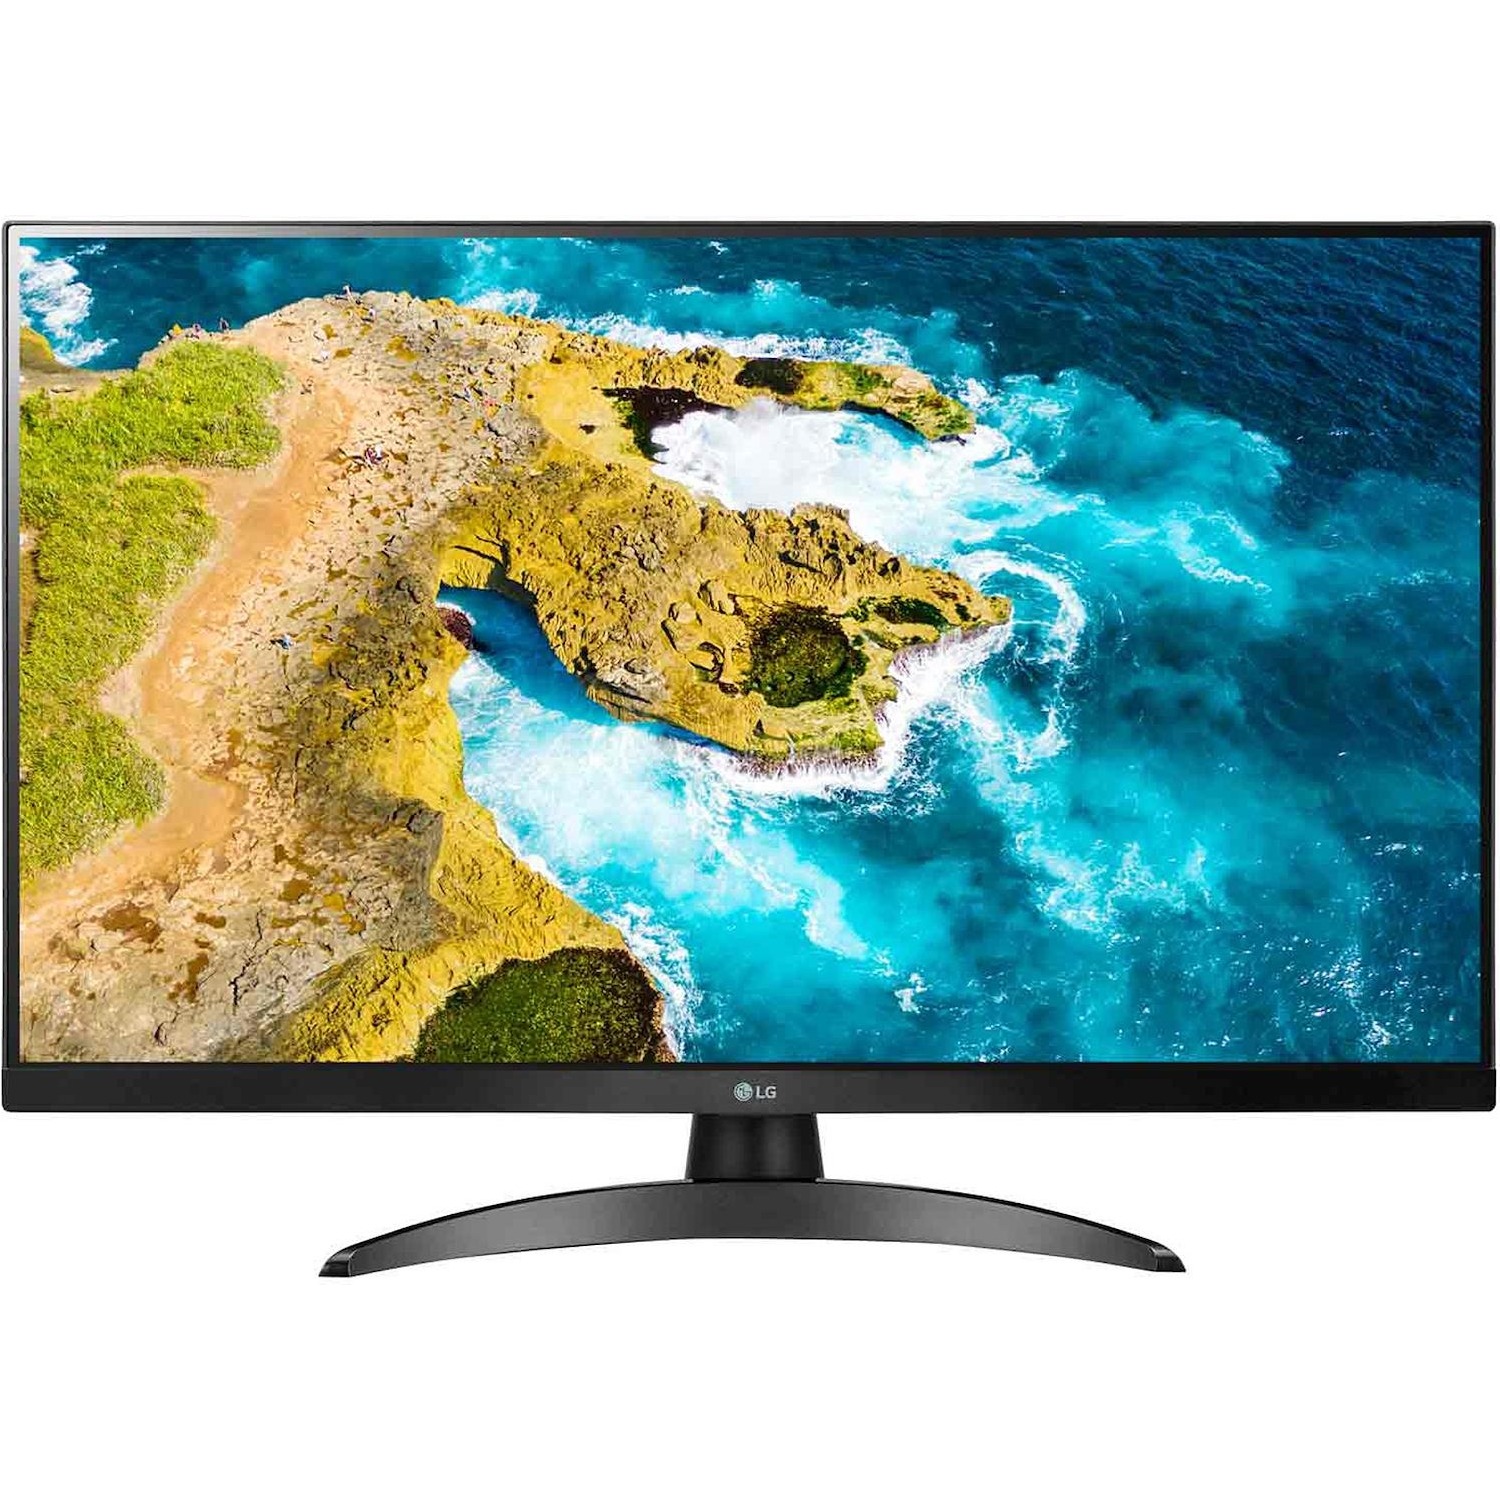 Immagine per TV LED Monitor Smart LG 27TQ615SP Calibrato FULL HD HDR da DIMOStore